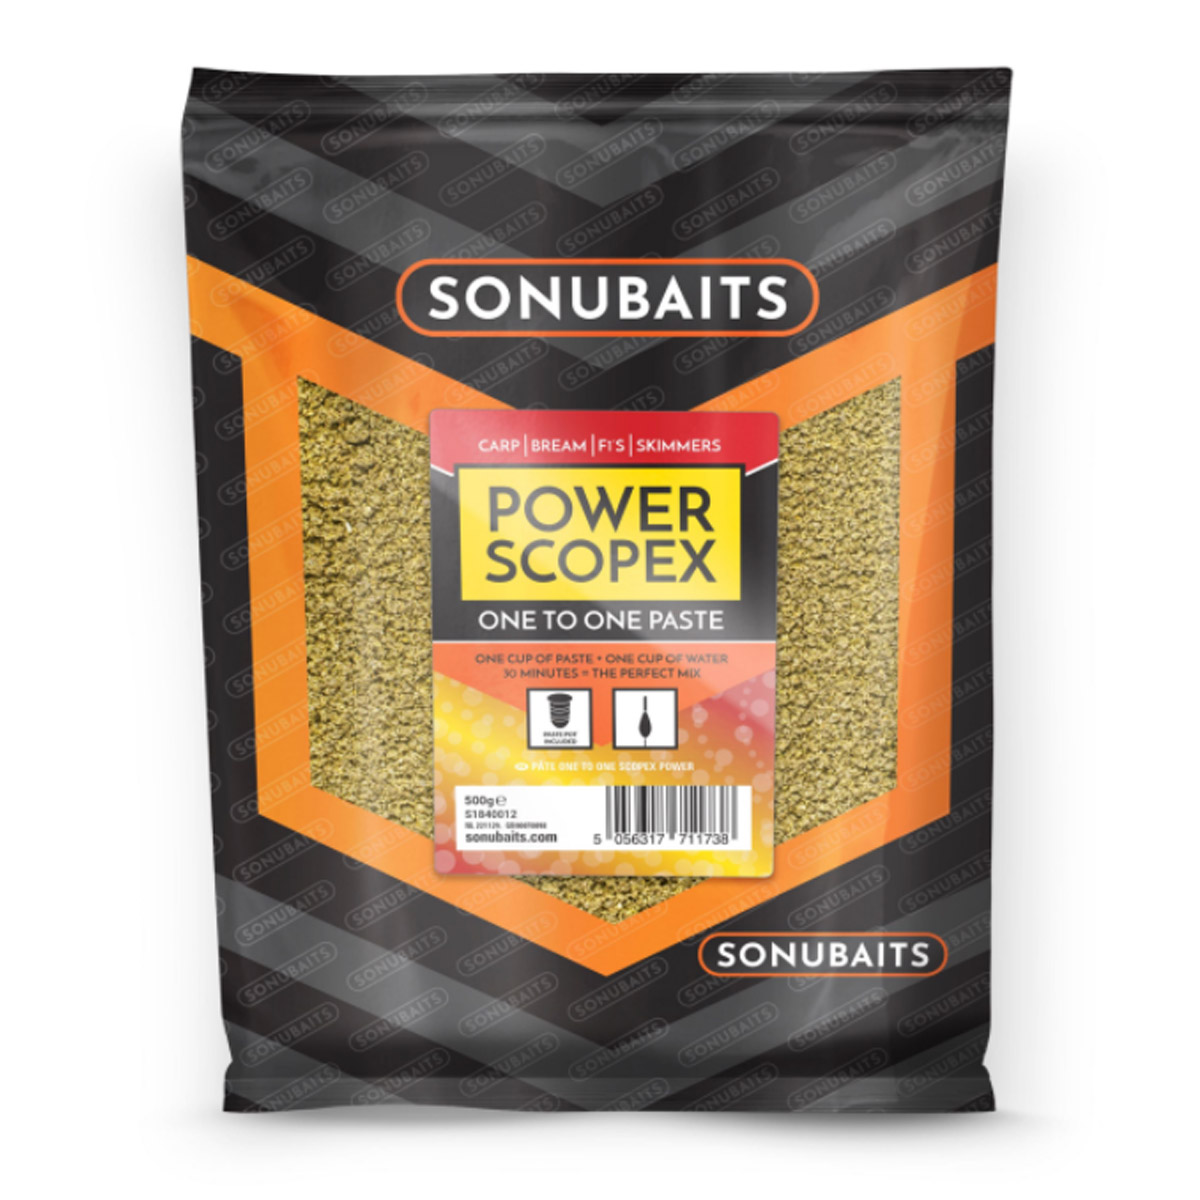 Sonubaits One To One Paste Power Scopex